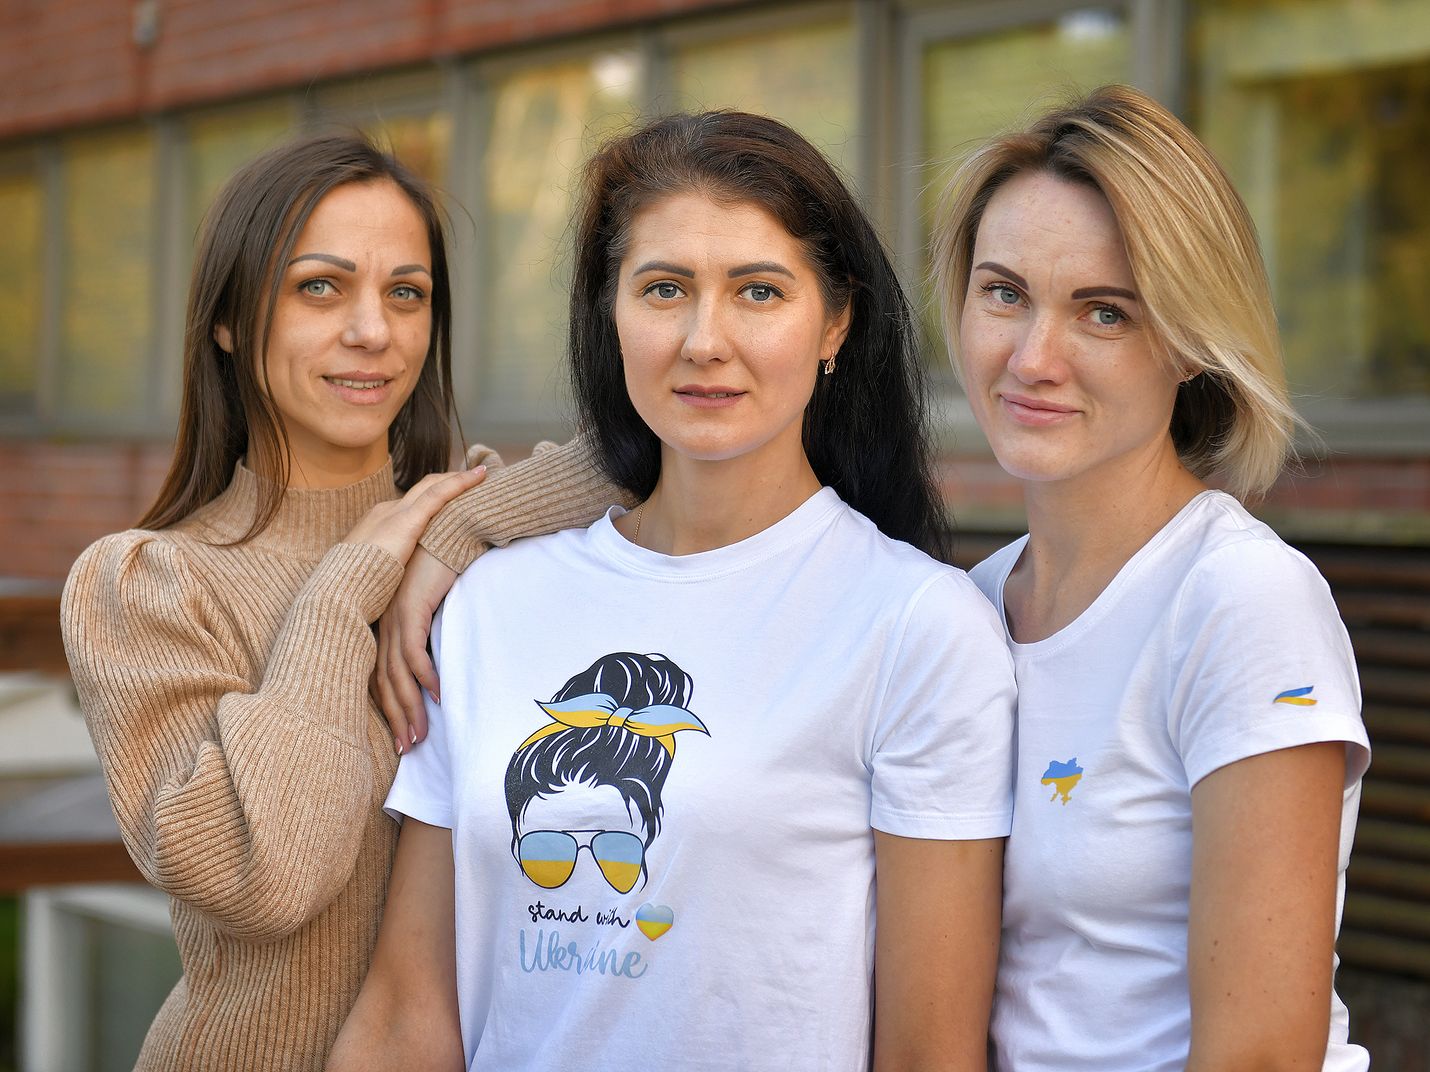 Raumalainen Tanja Kylander (oik.) sekä ukrainalaiset Oksana Barabanova ja Ksenia Panachova järjestävät lokakuun viimeisenä sunnuntaina Ukraina-avustustarvikekeräyksen. Kolmikon lisäksi järjestäjätiimiin kuuluu muitakin ukrainalaissyntyisiä naisia.